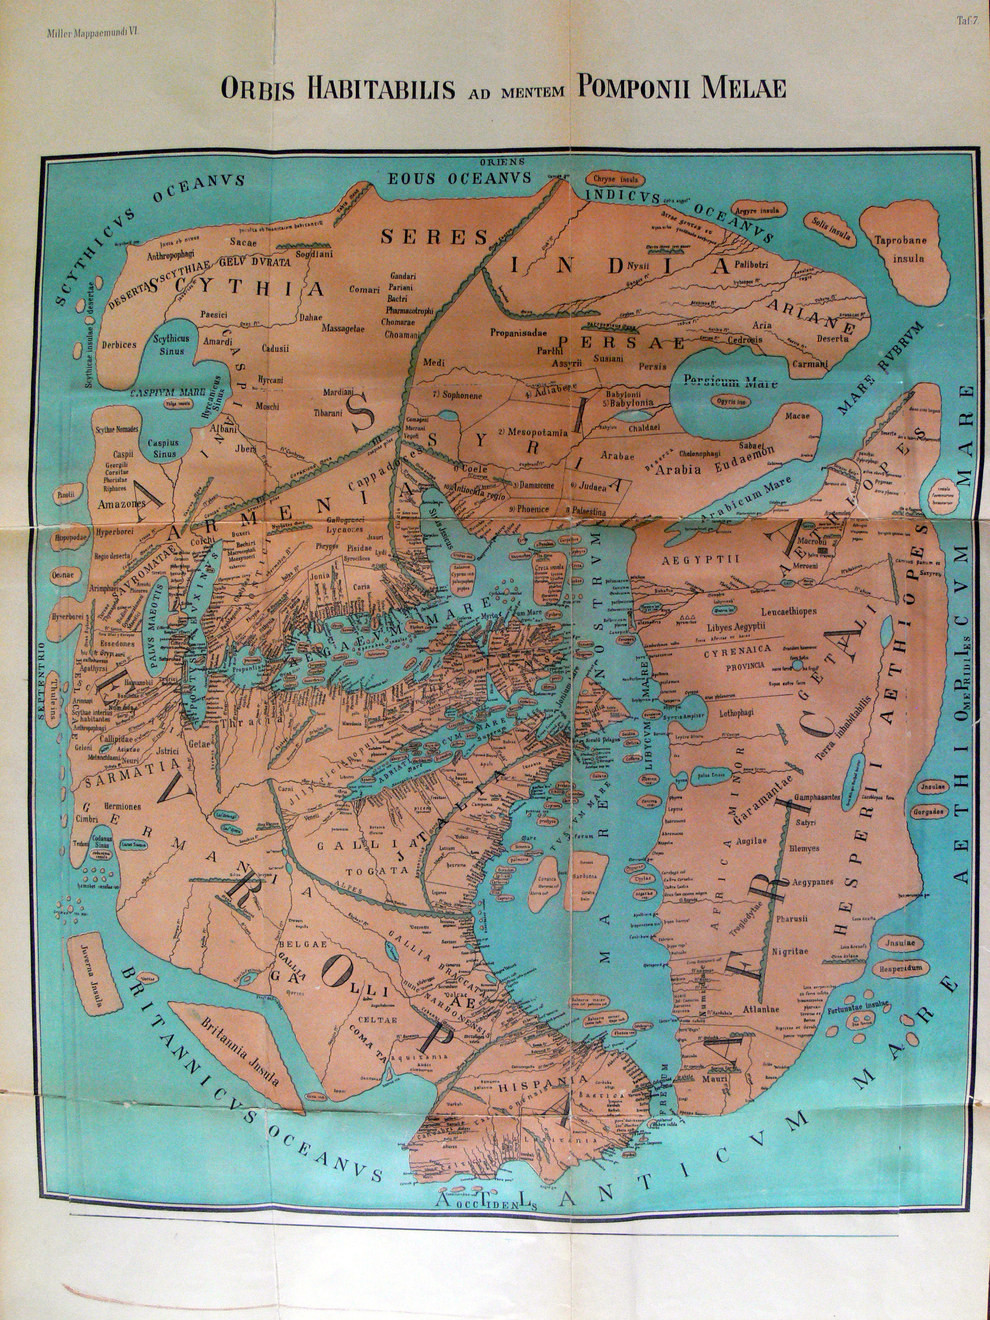 5. География мира в представлении Помпония Мелы в 43 году карта, мир